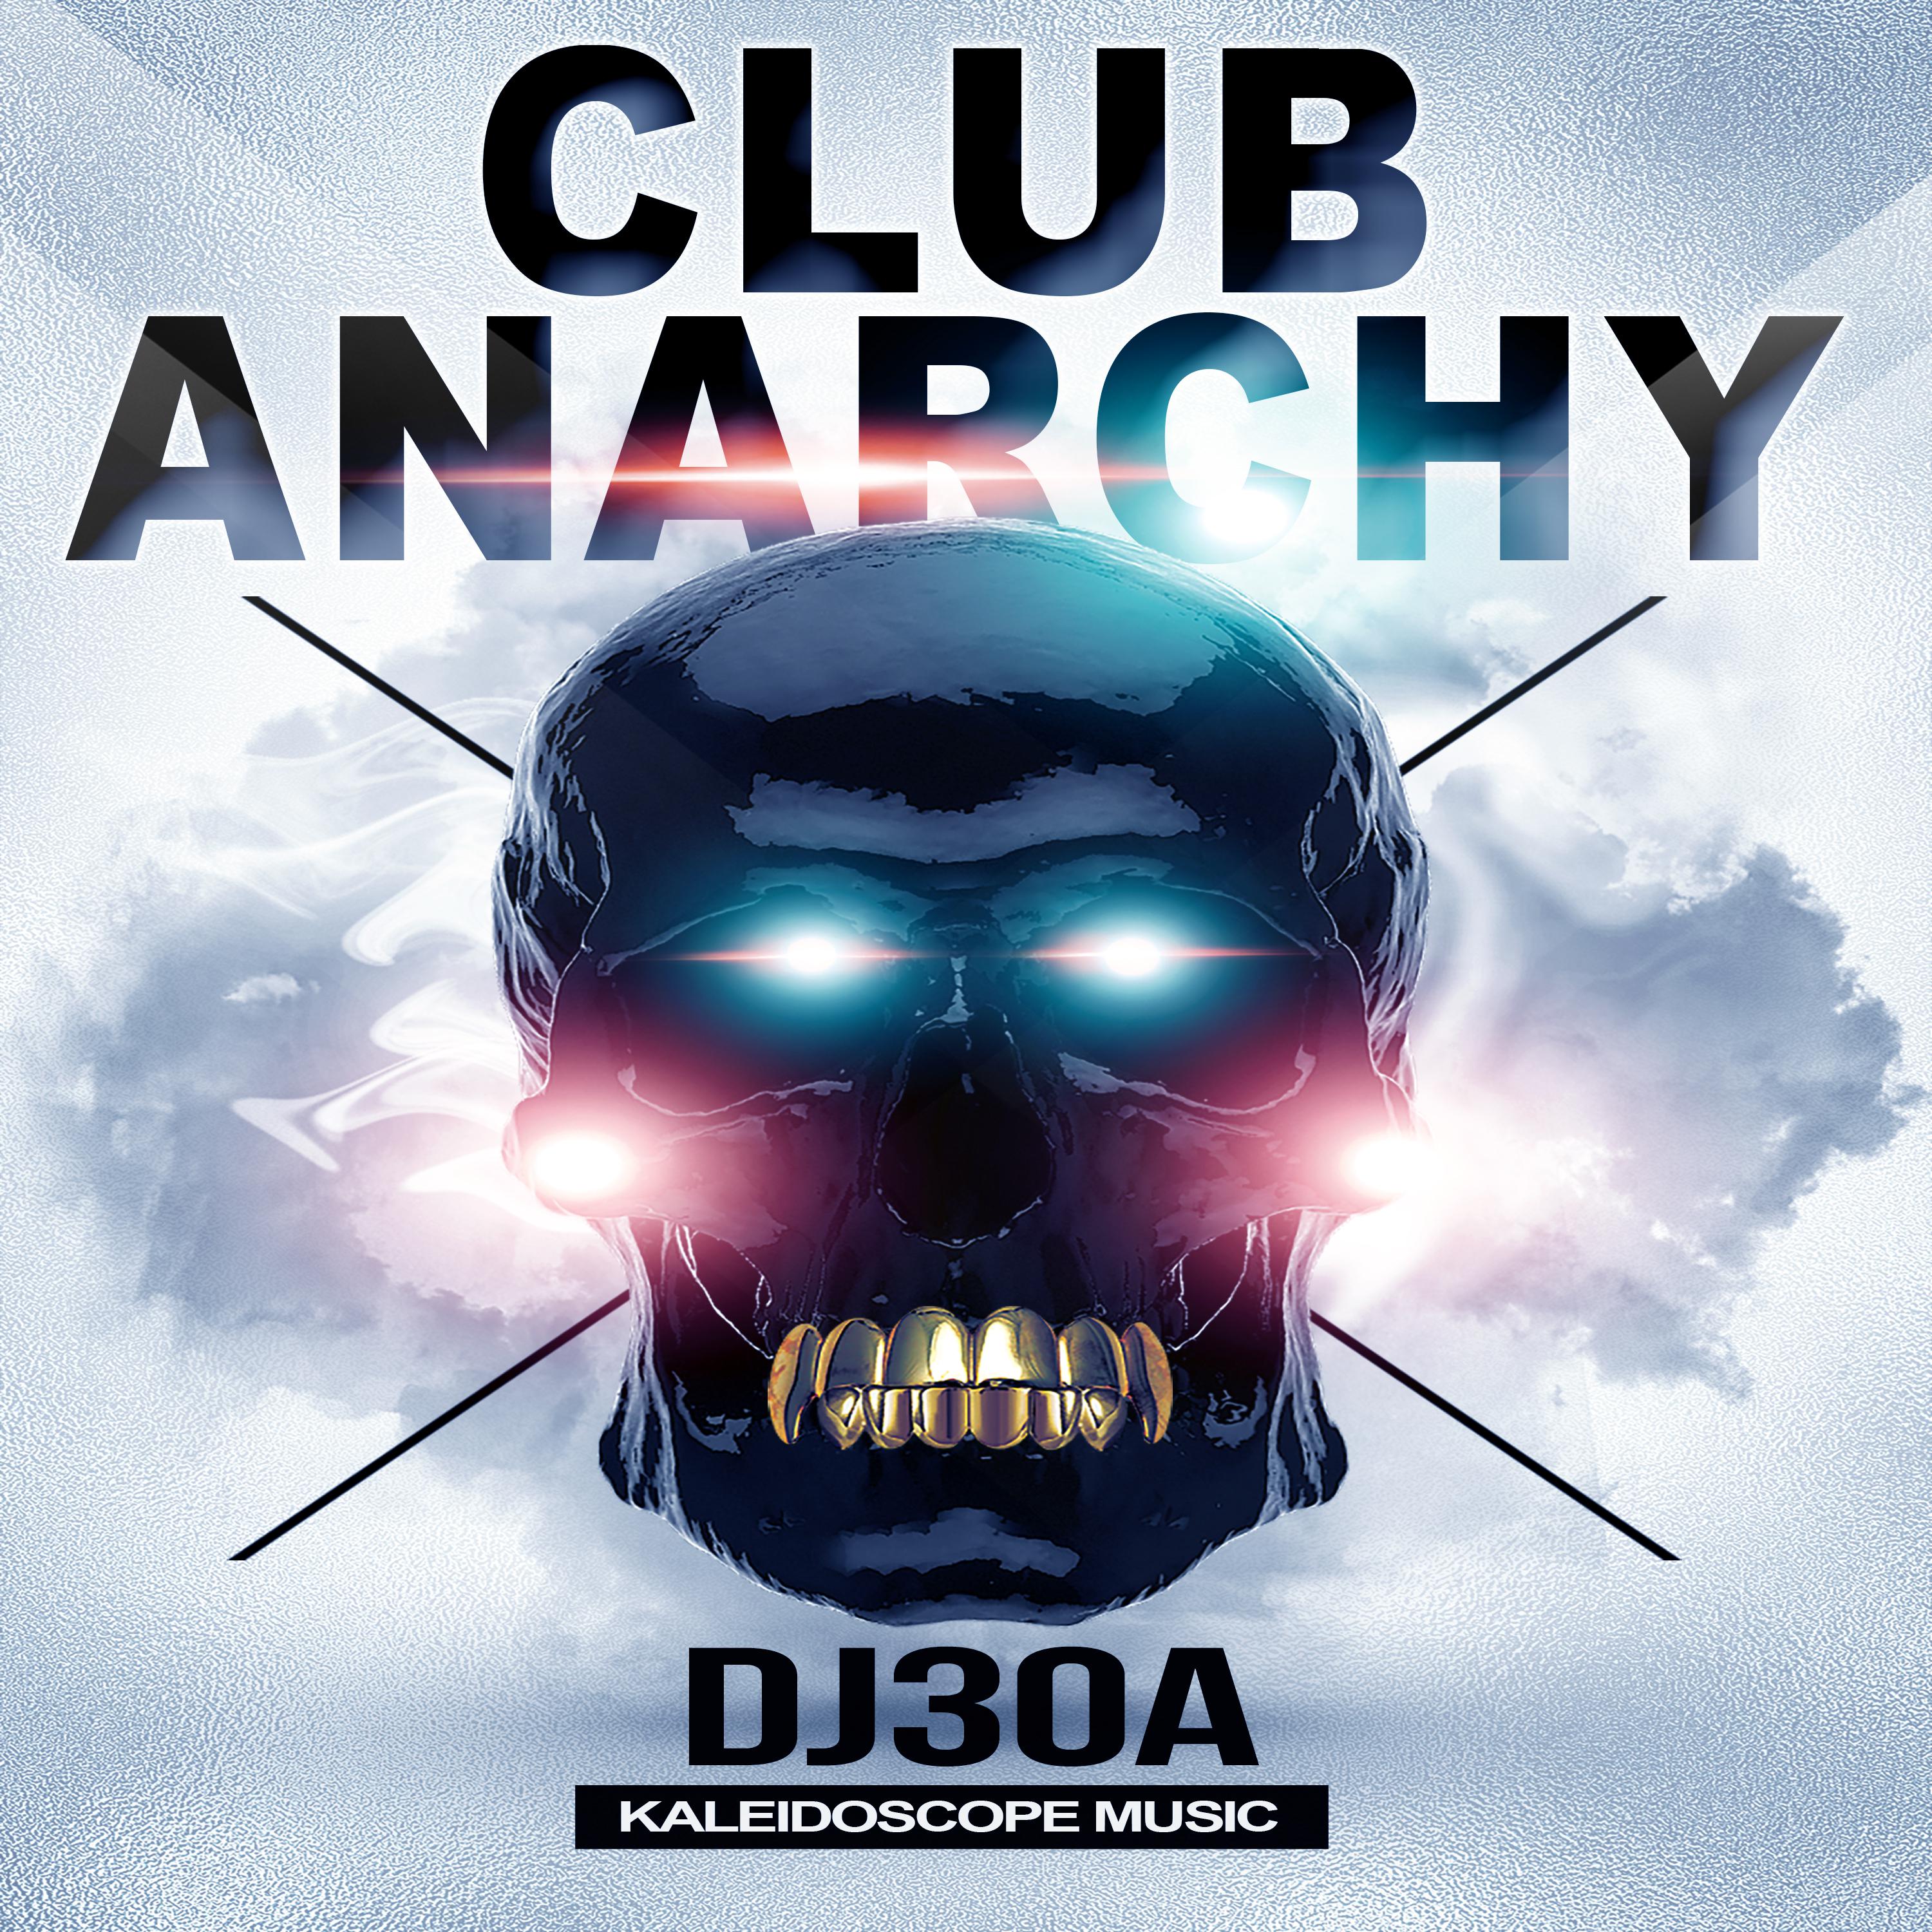 Club Anarchy